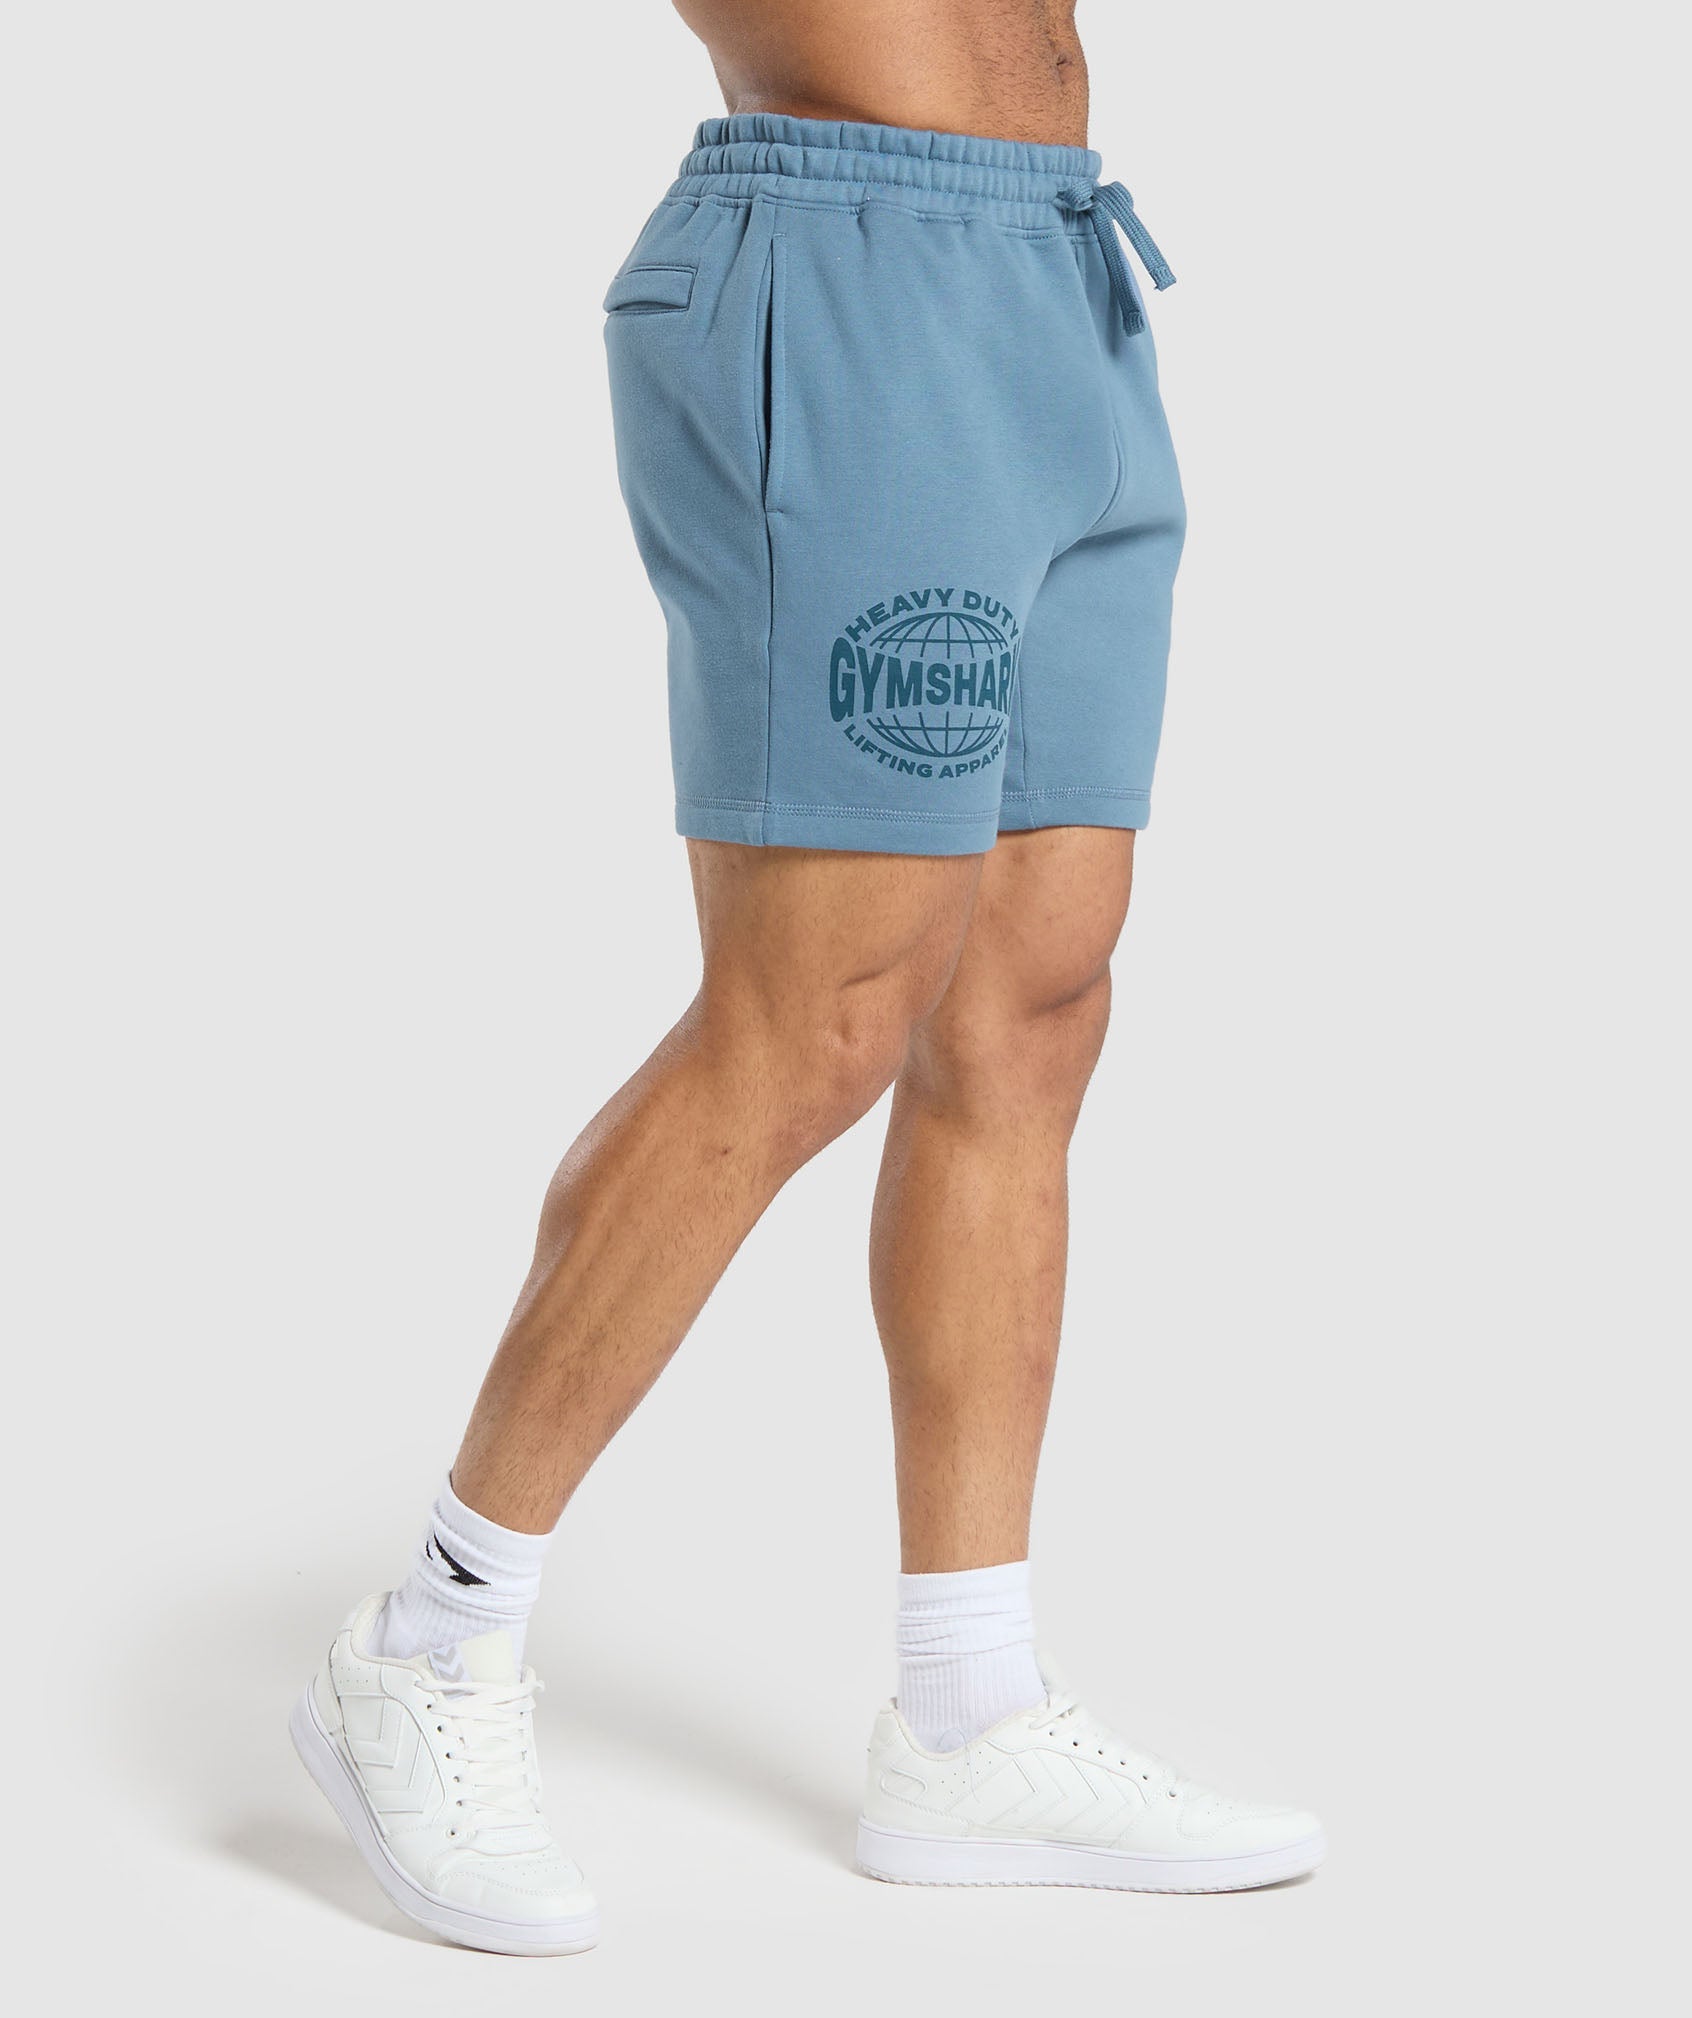 Heavy Duty Apparel 7" Shorts en Faded Blue